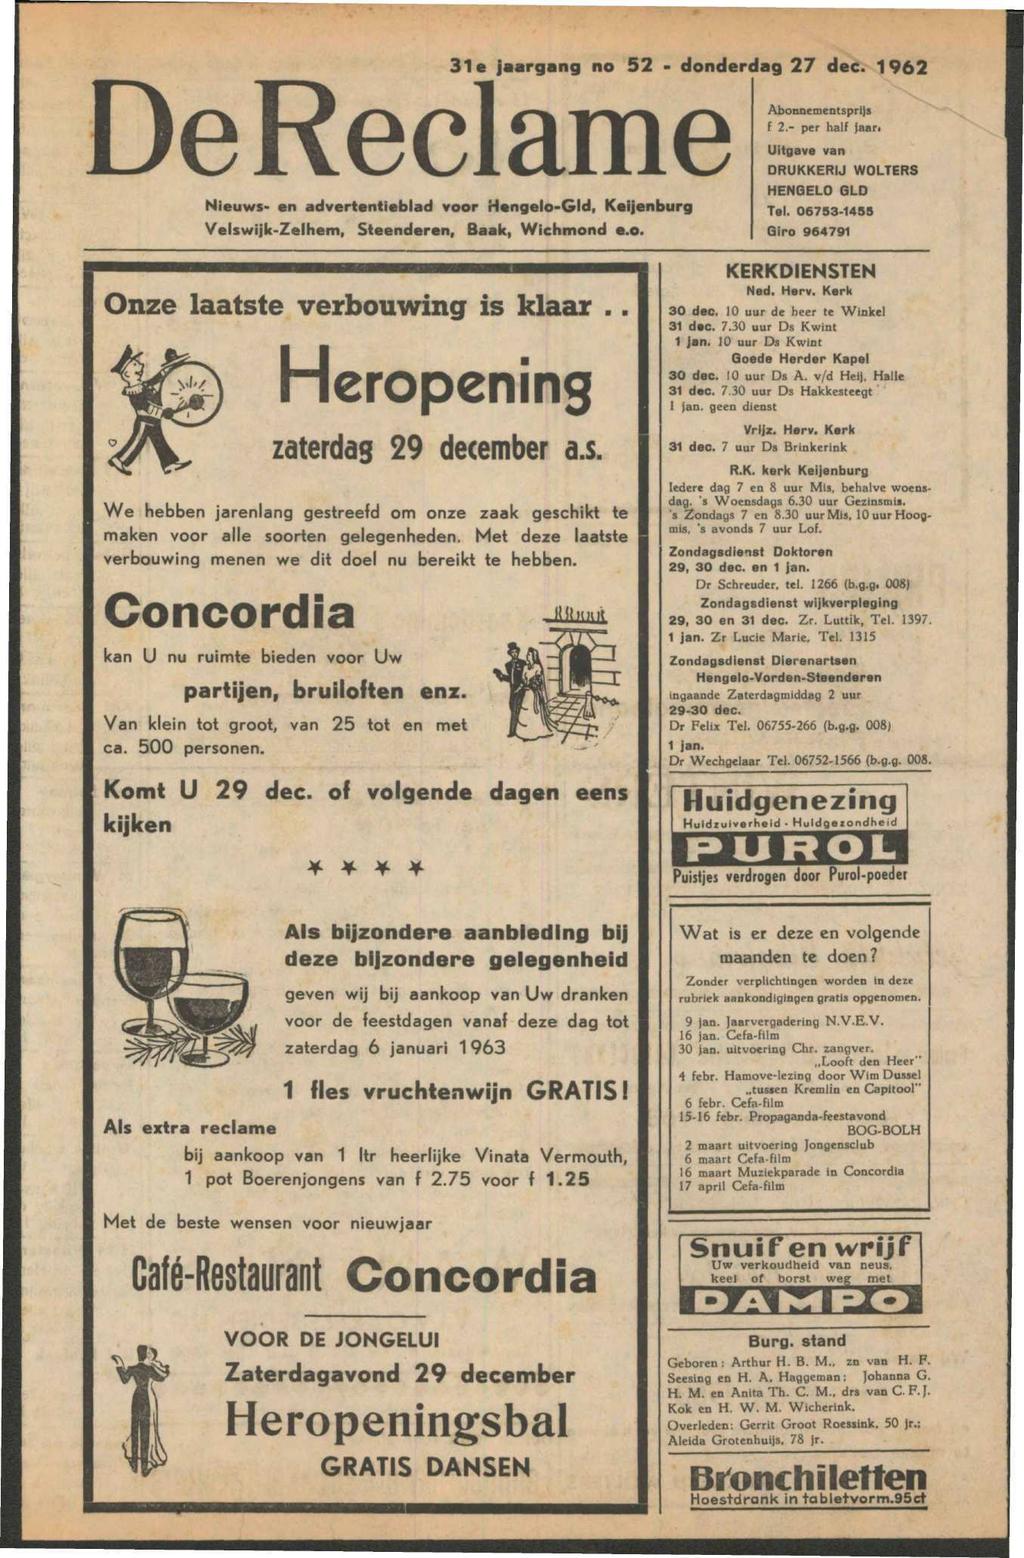 De Reclame Nieuws* en advertentieblad voor Hengelo-Gld, Velswijk-Zelhem, Steenderen, Baak, Wichmond e.o. 31 e jaargang no 52 - donderdag 27 dec. 1962 Abonnementsprijs f 2.- per half jaar.